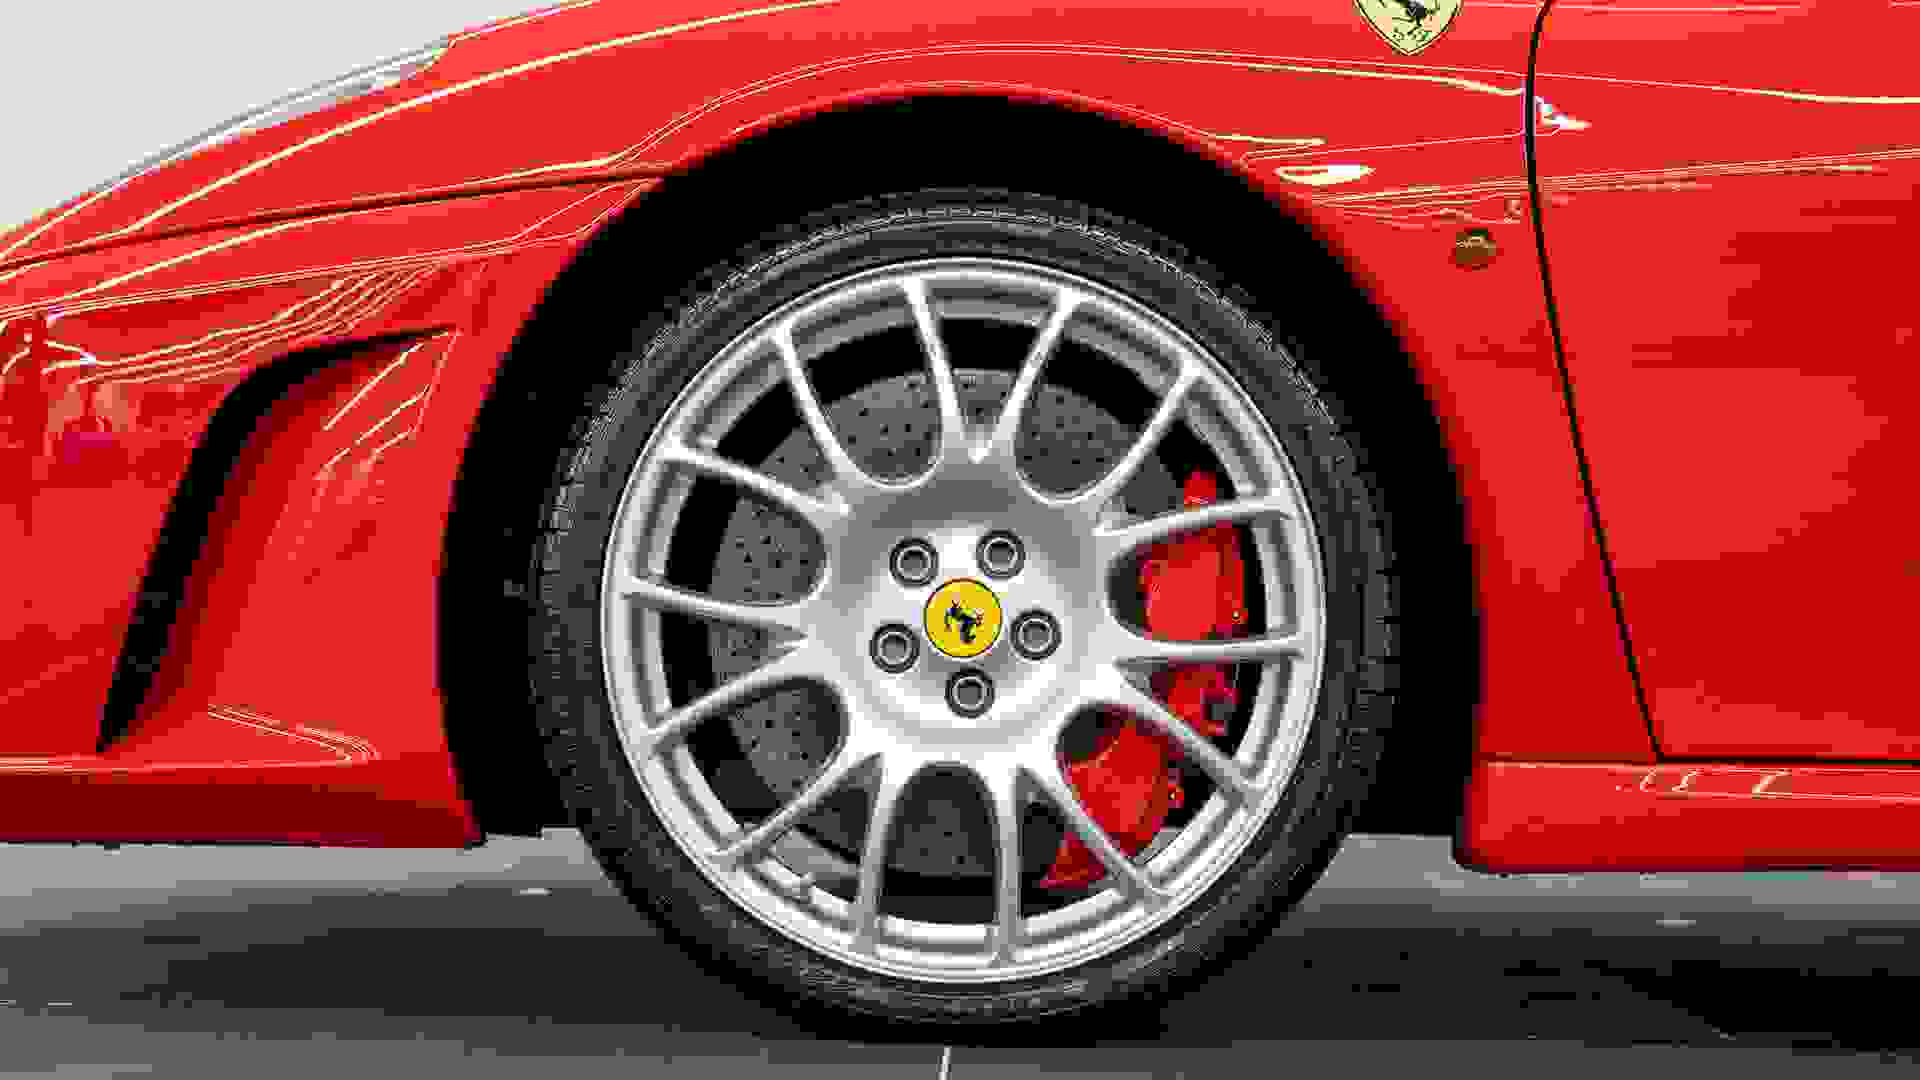 Ferrari F430 Spider Photo 3ca75adc-c48d-4a3a-b324-633b897da3ec.jpg